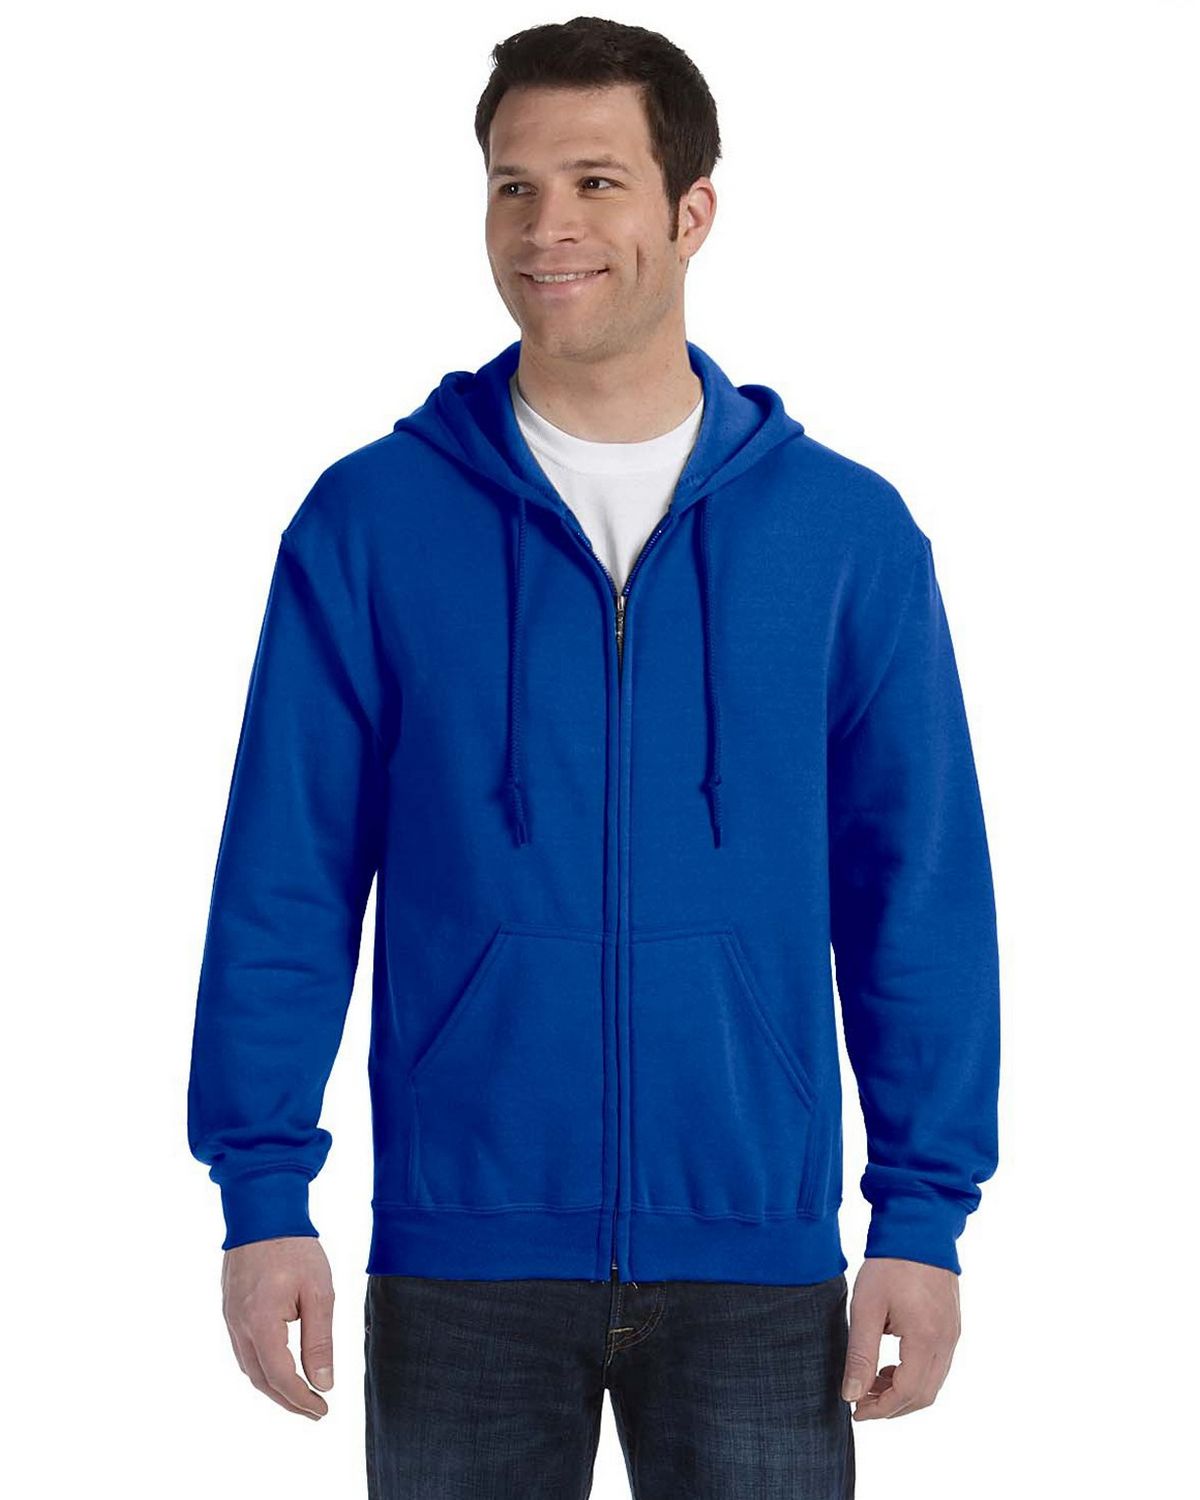 Gildan 18600 Zip Fleece Sweatshirt - ApparelnBags.com